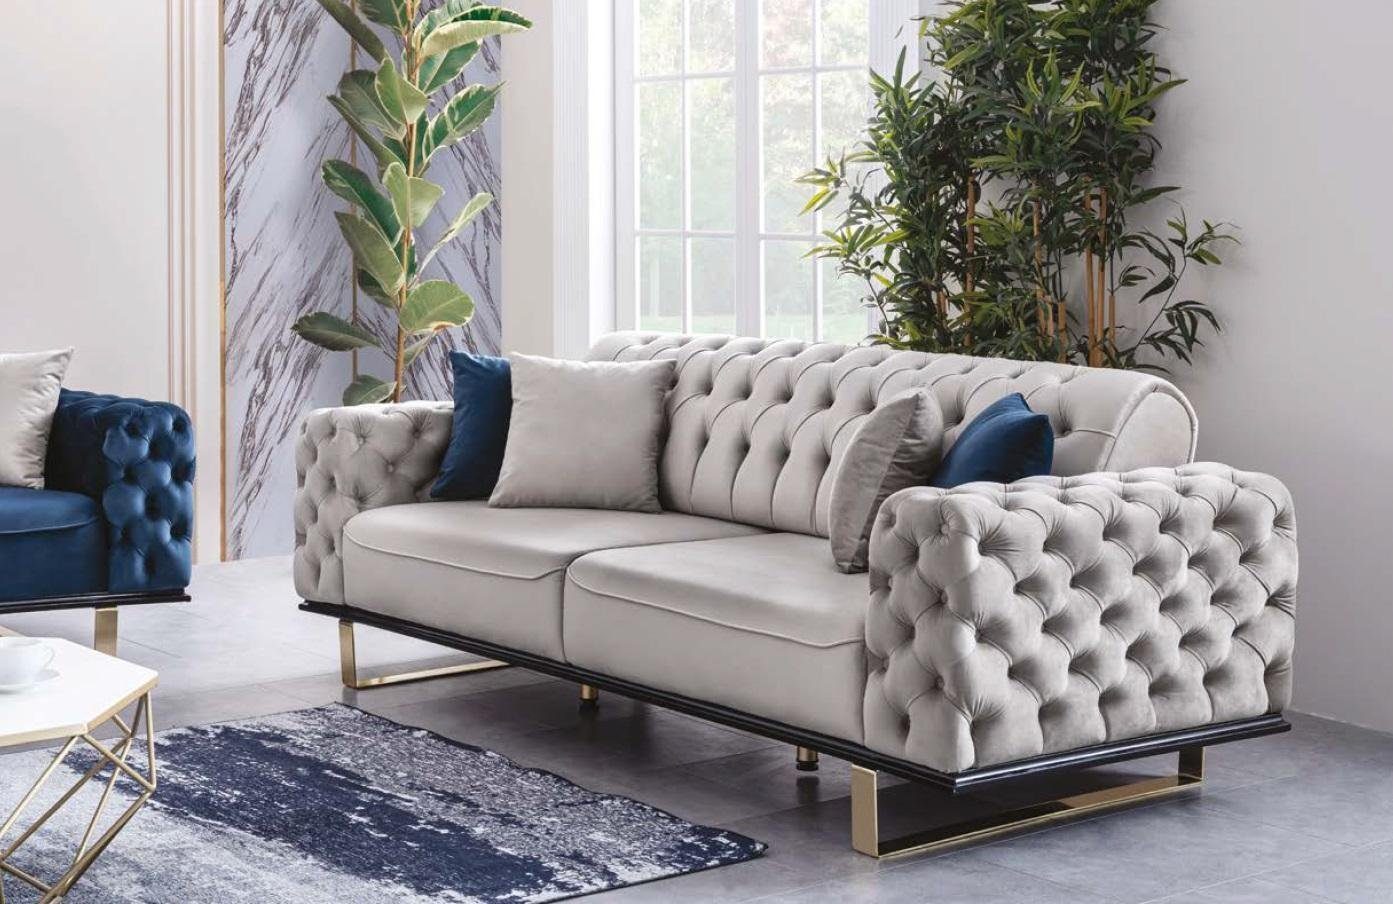 JVmoebel Chesterfield-Sofa, Graue Chesterfield Couch Möbel Sofa Wohnzimmer Luxus Einrichtung 230cm